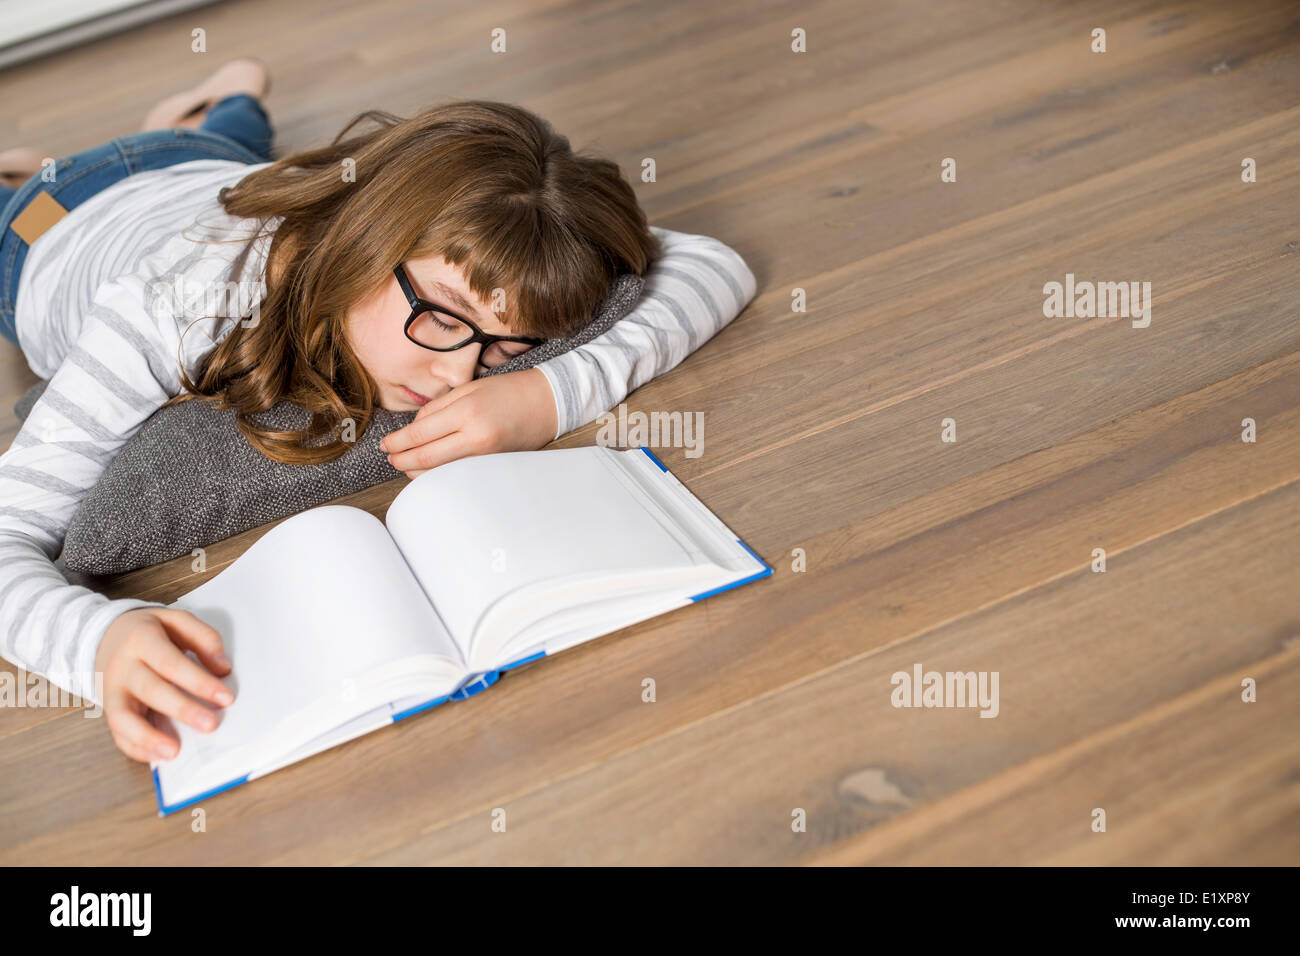 Angolo di Alta Vista della ragazza adolescente dormendo mentre lo studio sul pavimento Foto Stock